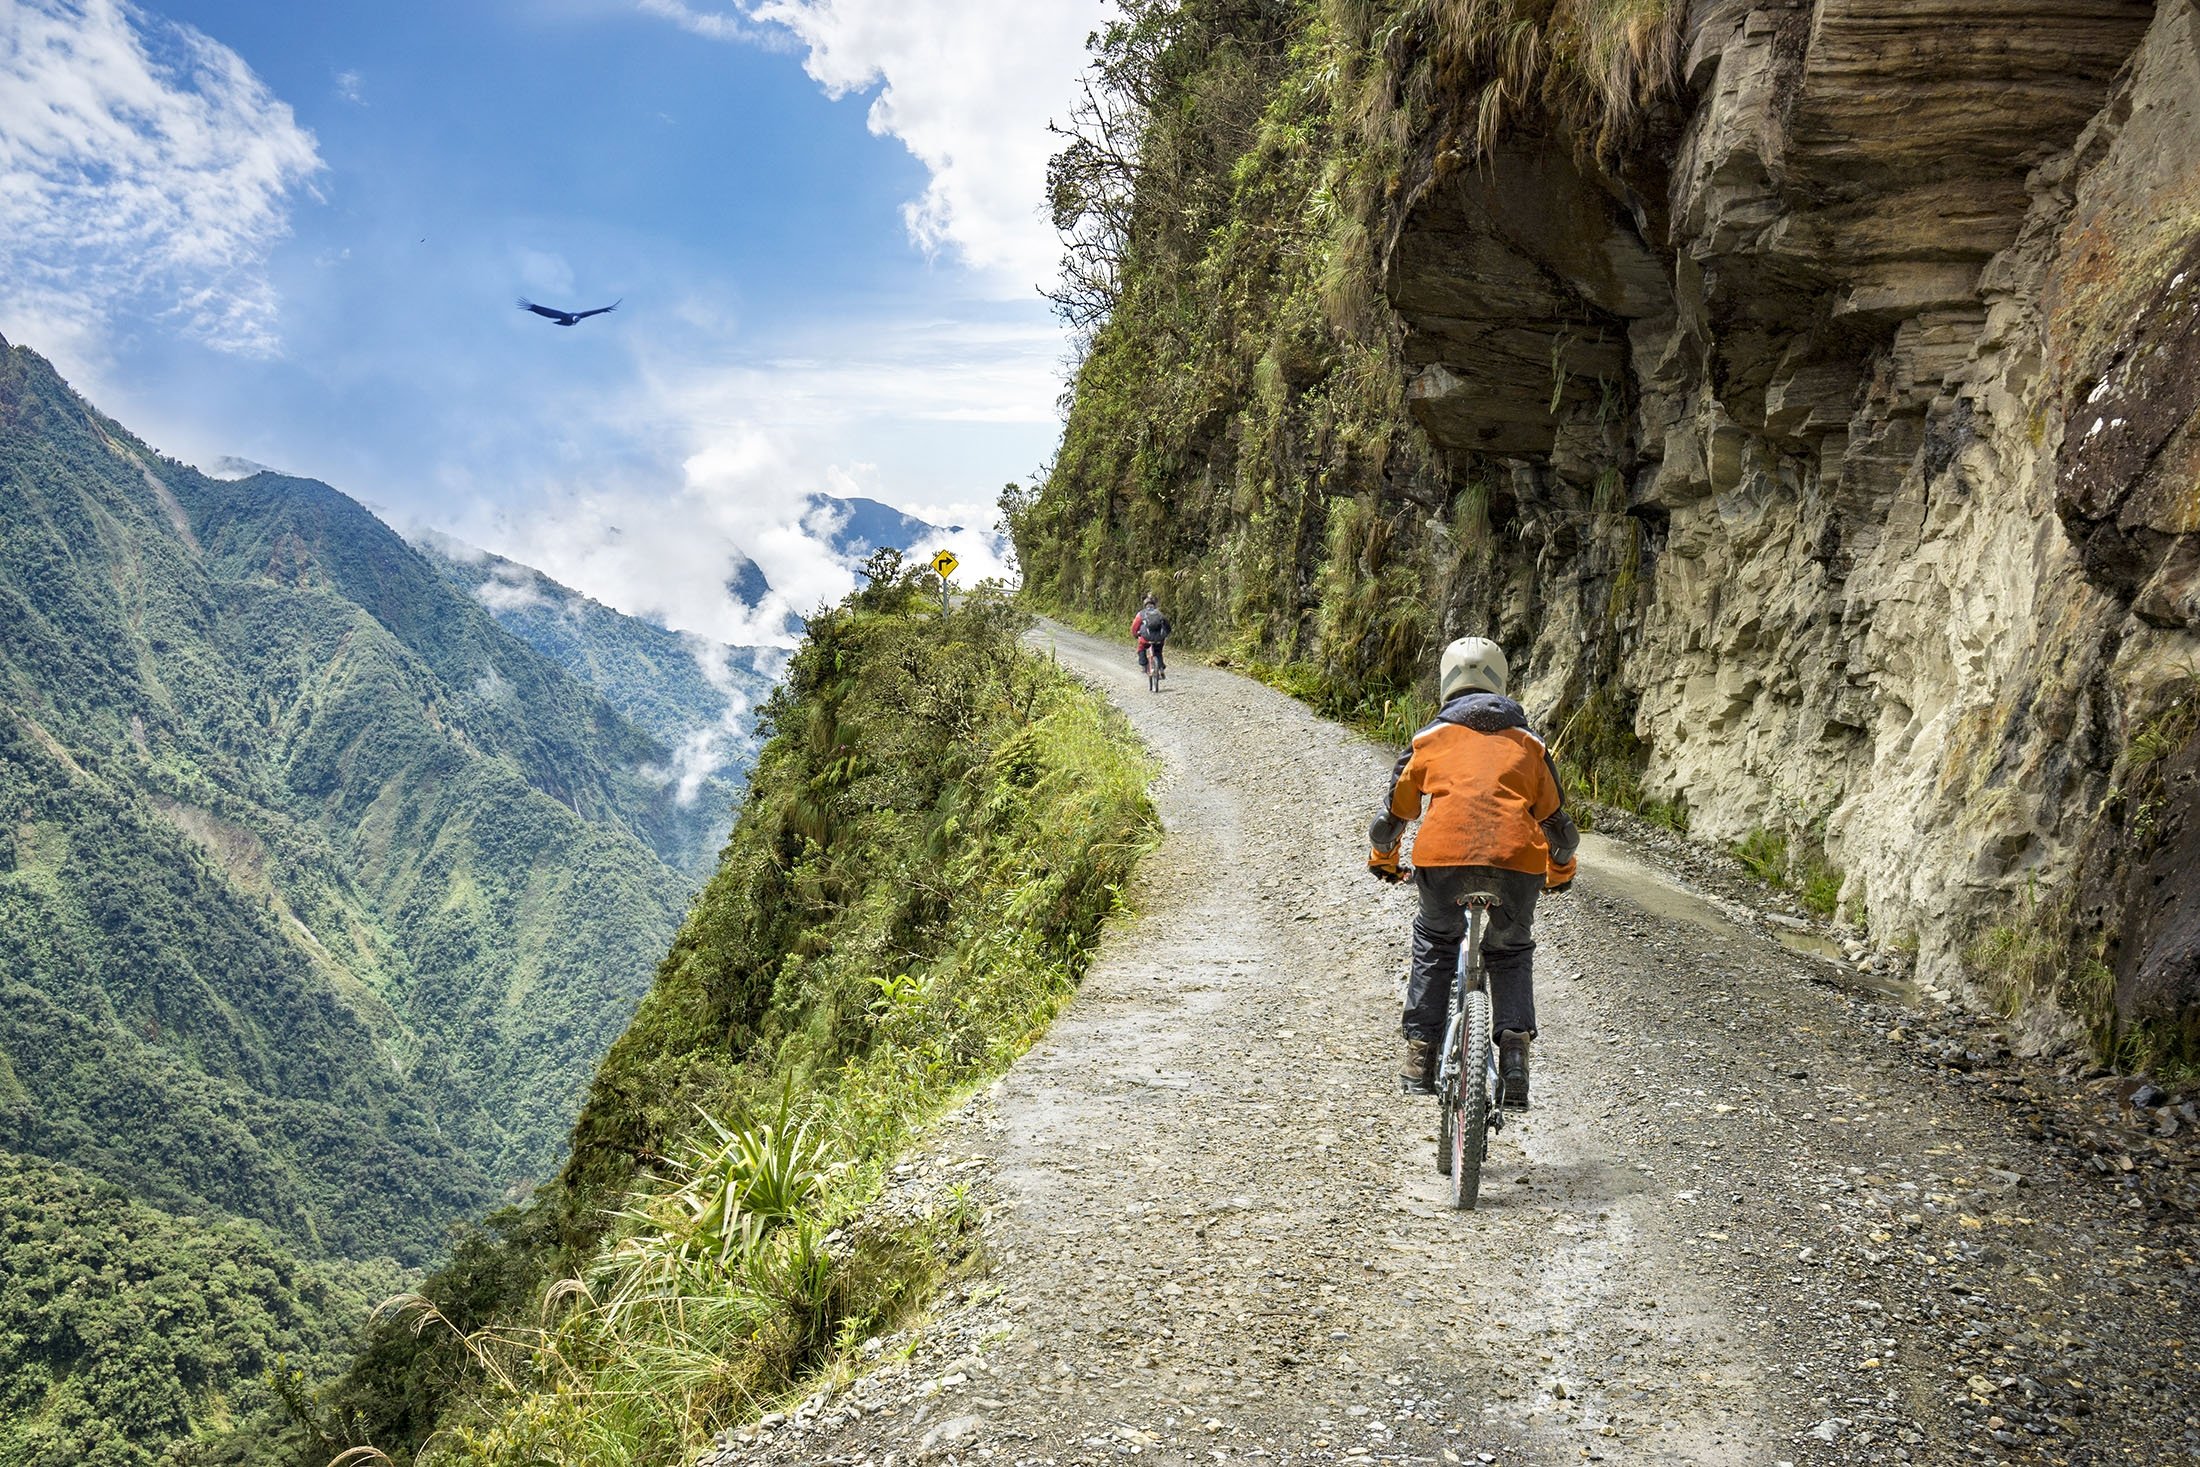 Yungas Road adalah rute bersepeda sepanjang sekitar 60 kilometer yang menghubungkan kota La Paz dan wilayah Yungas Bolivia, yang dijuluki 